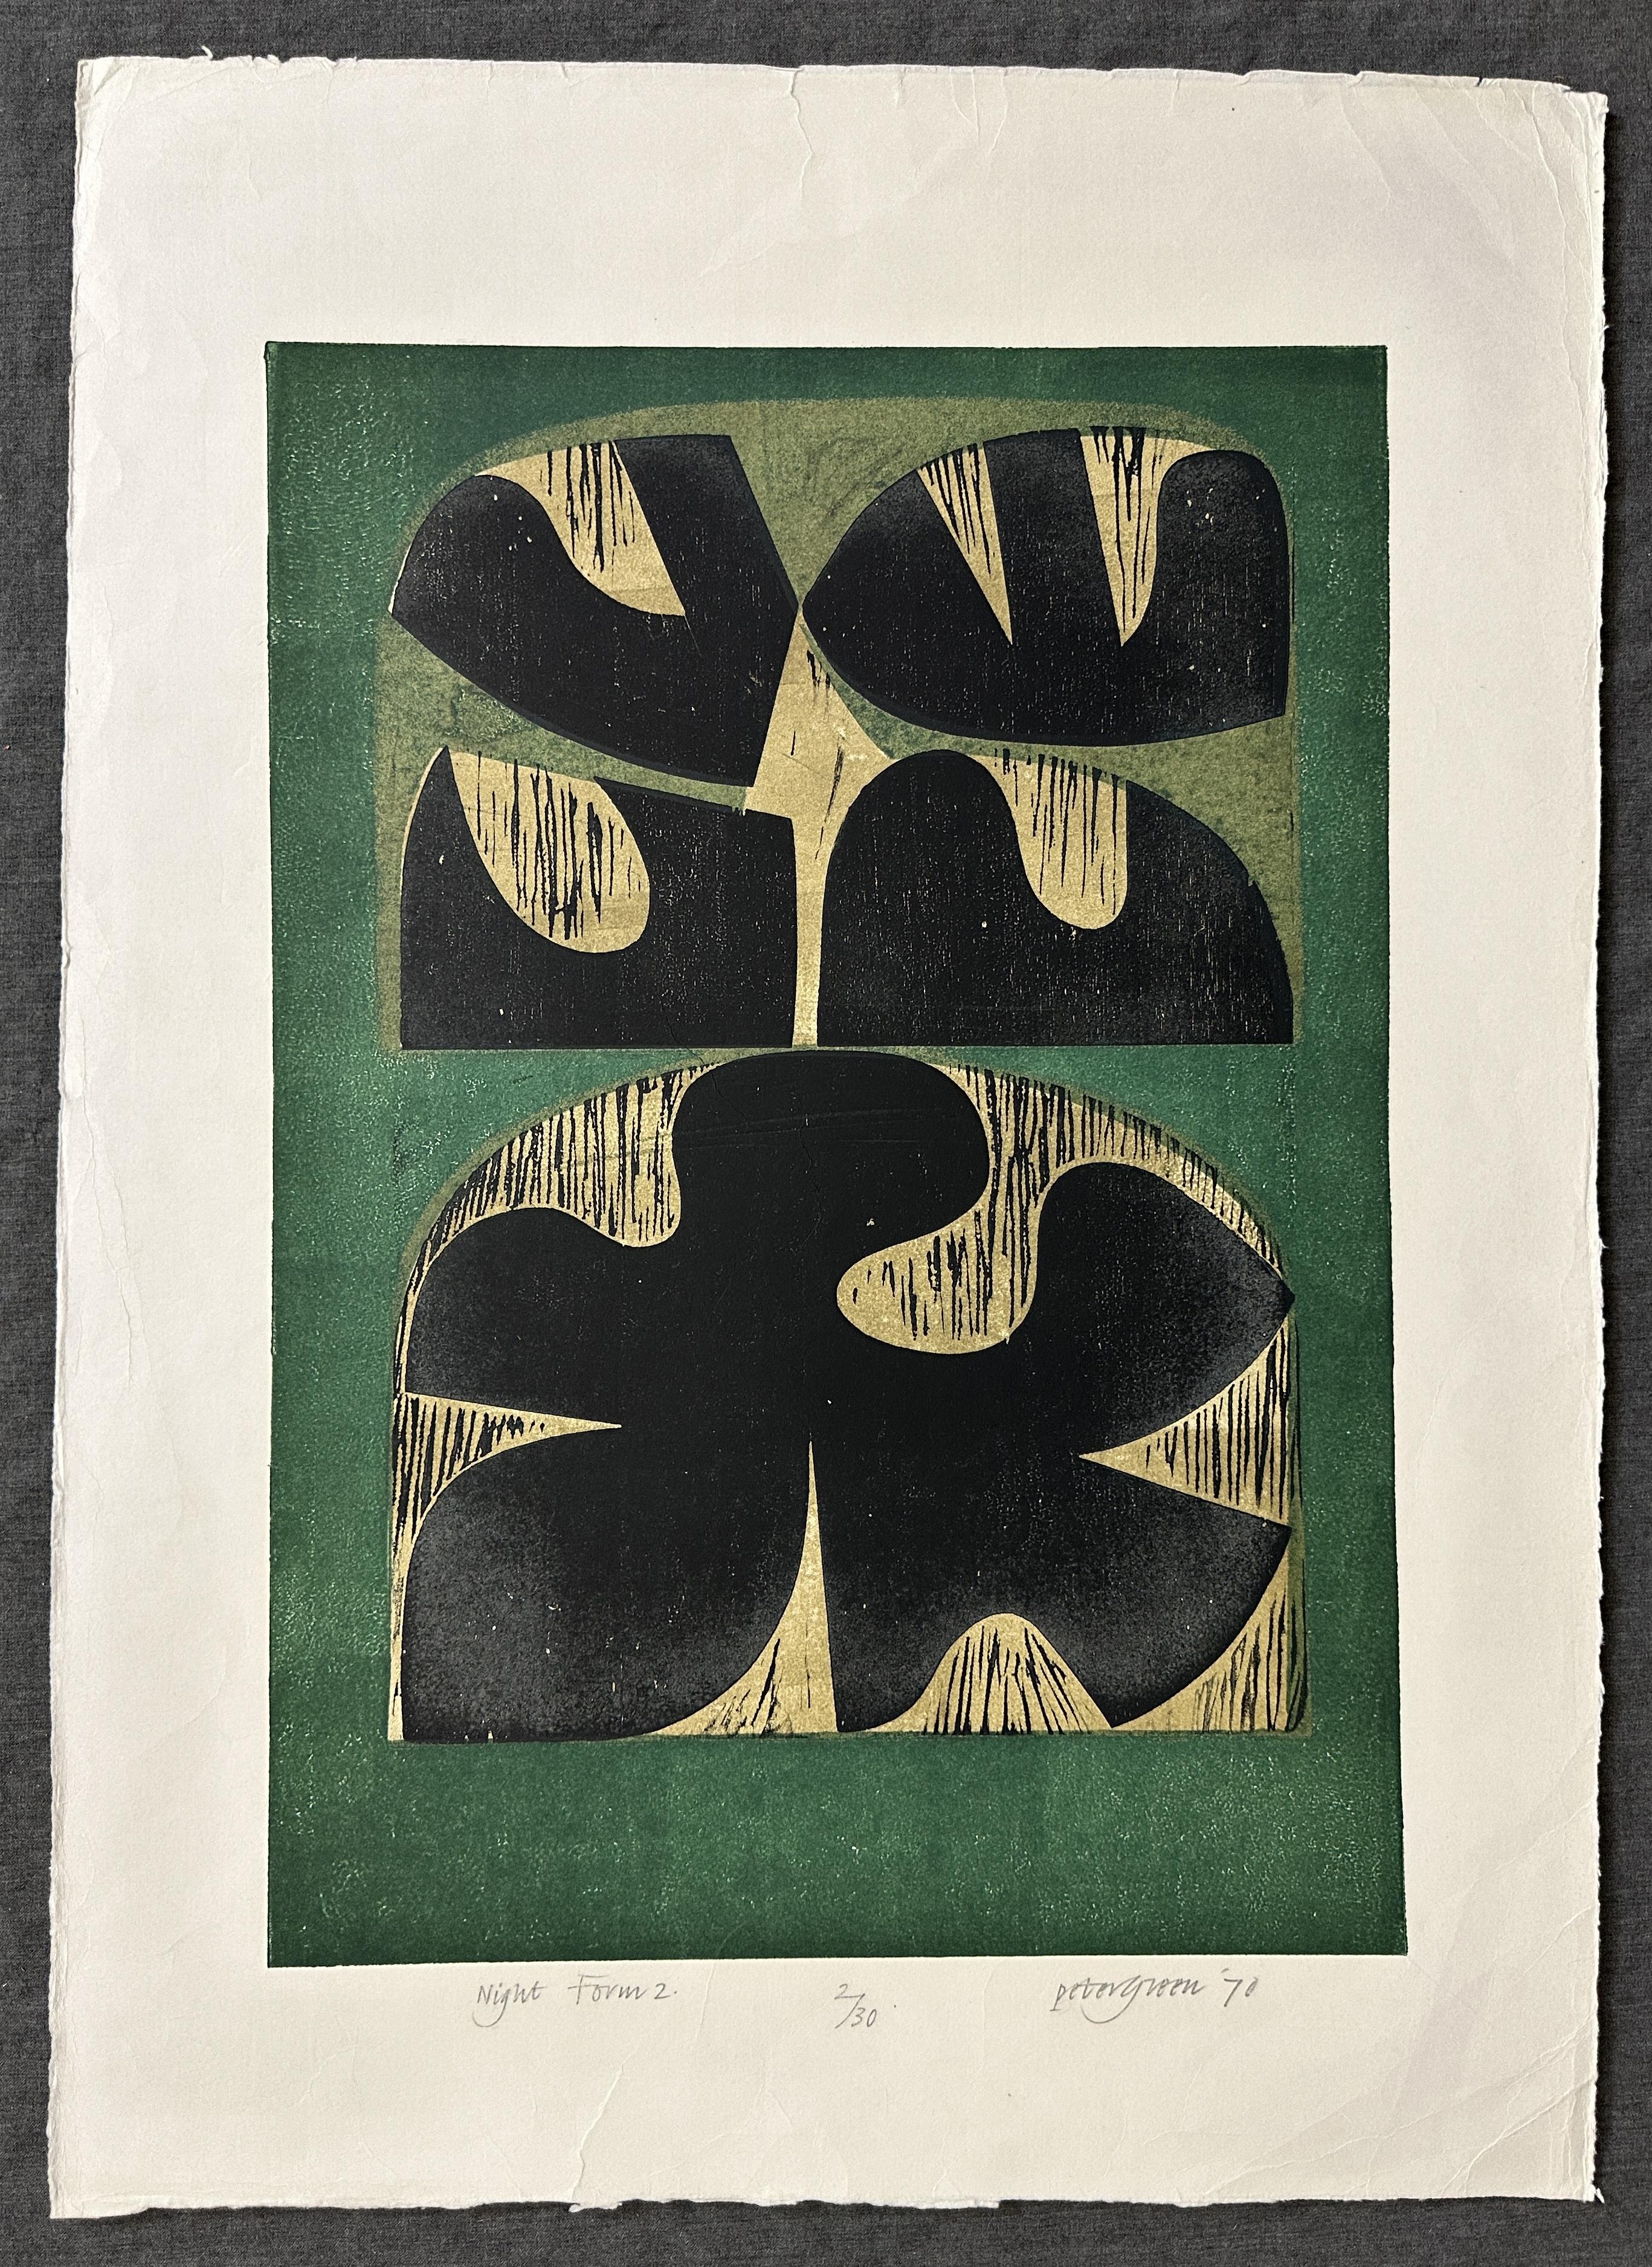 Nachtform 2 1970 Signierter großer Holzschnitt in limitierter Auflage – Print von Peter Green